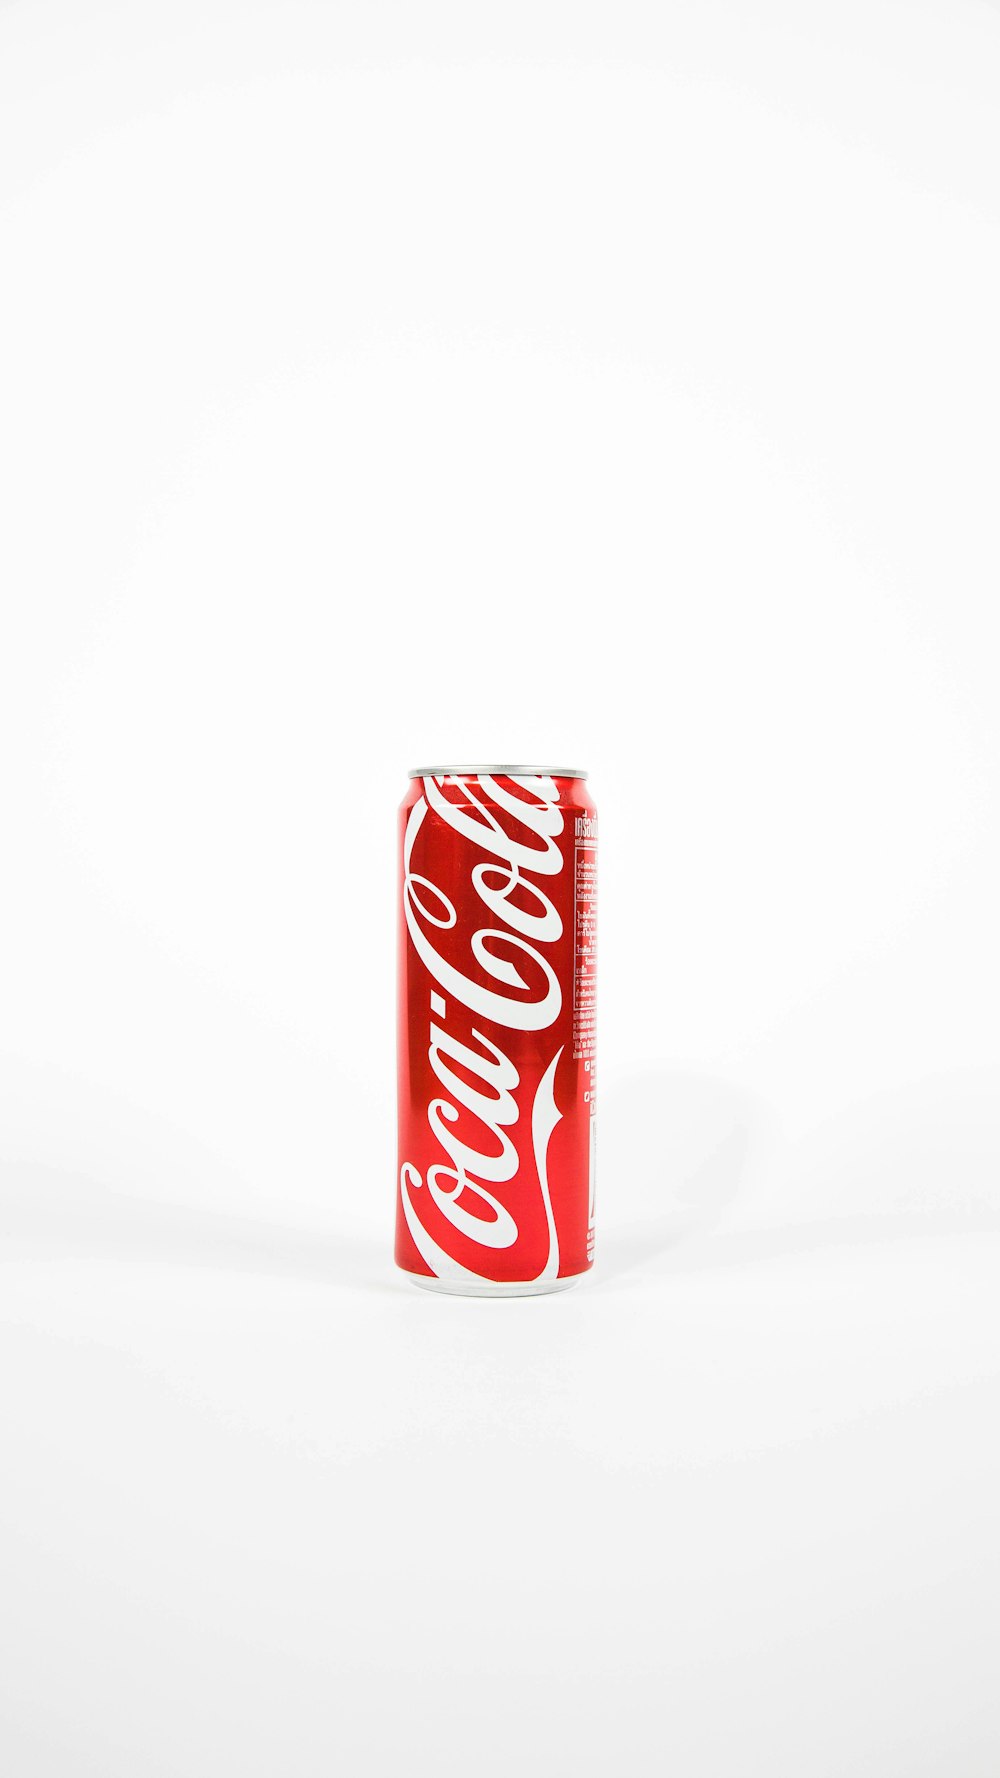 lata roja de Coca-Cola